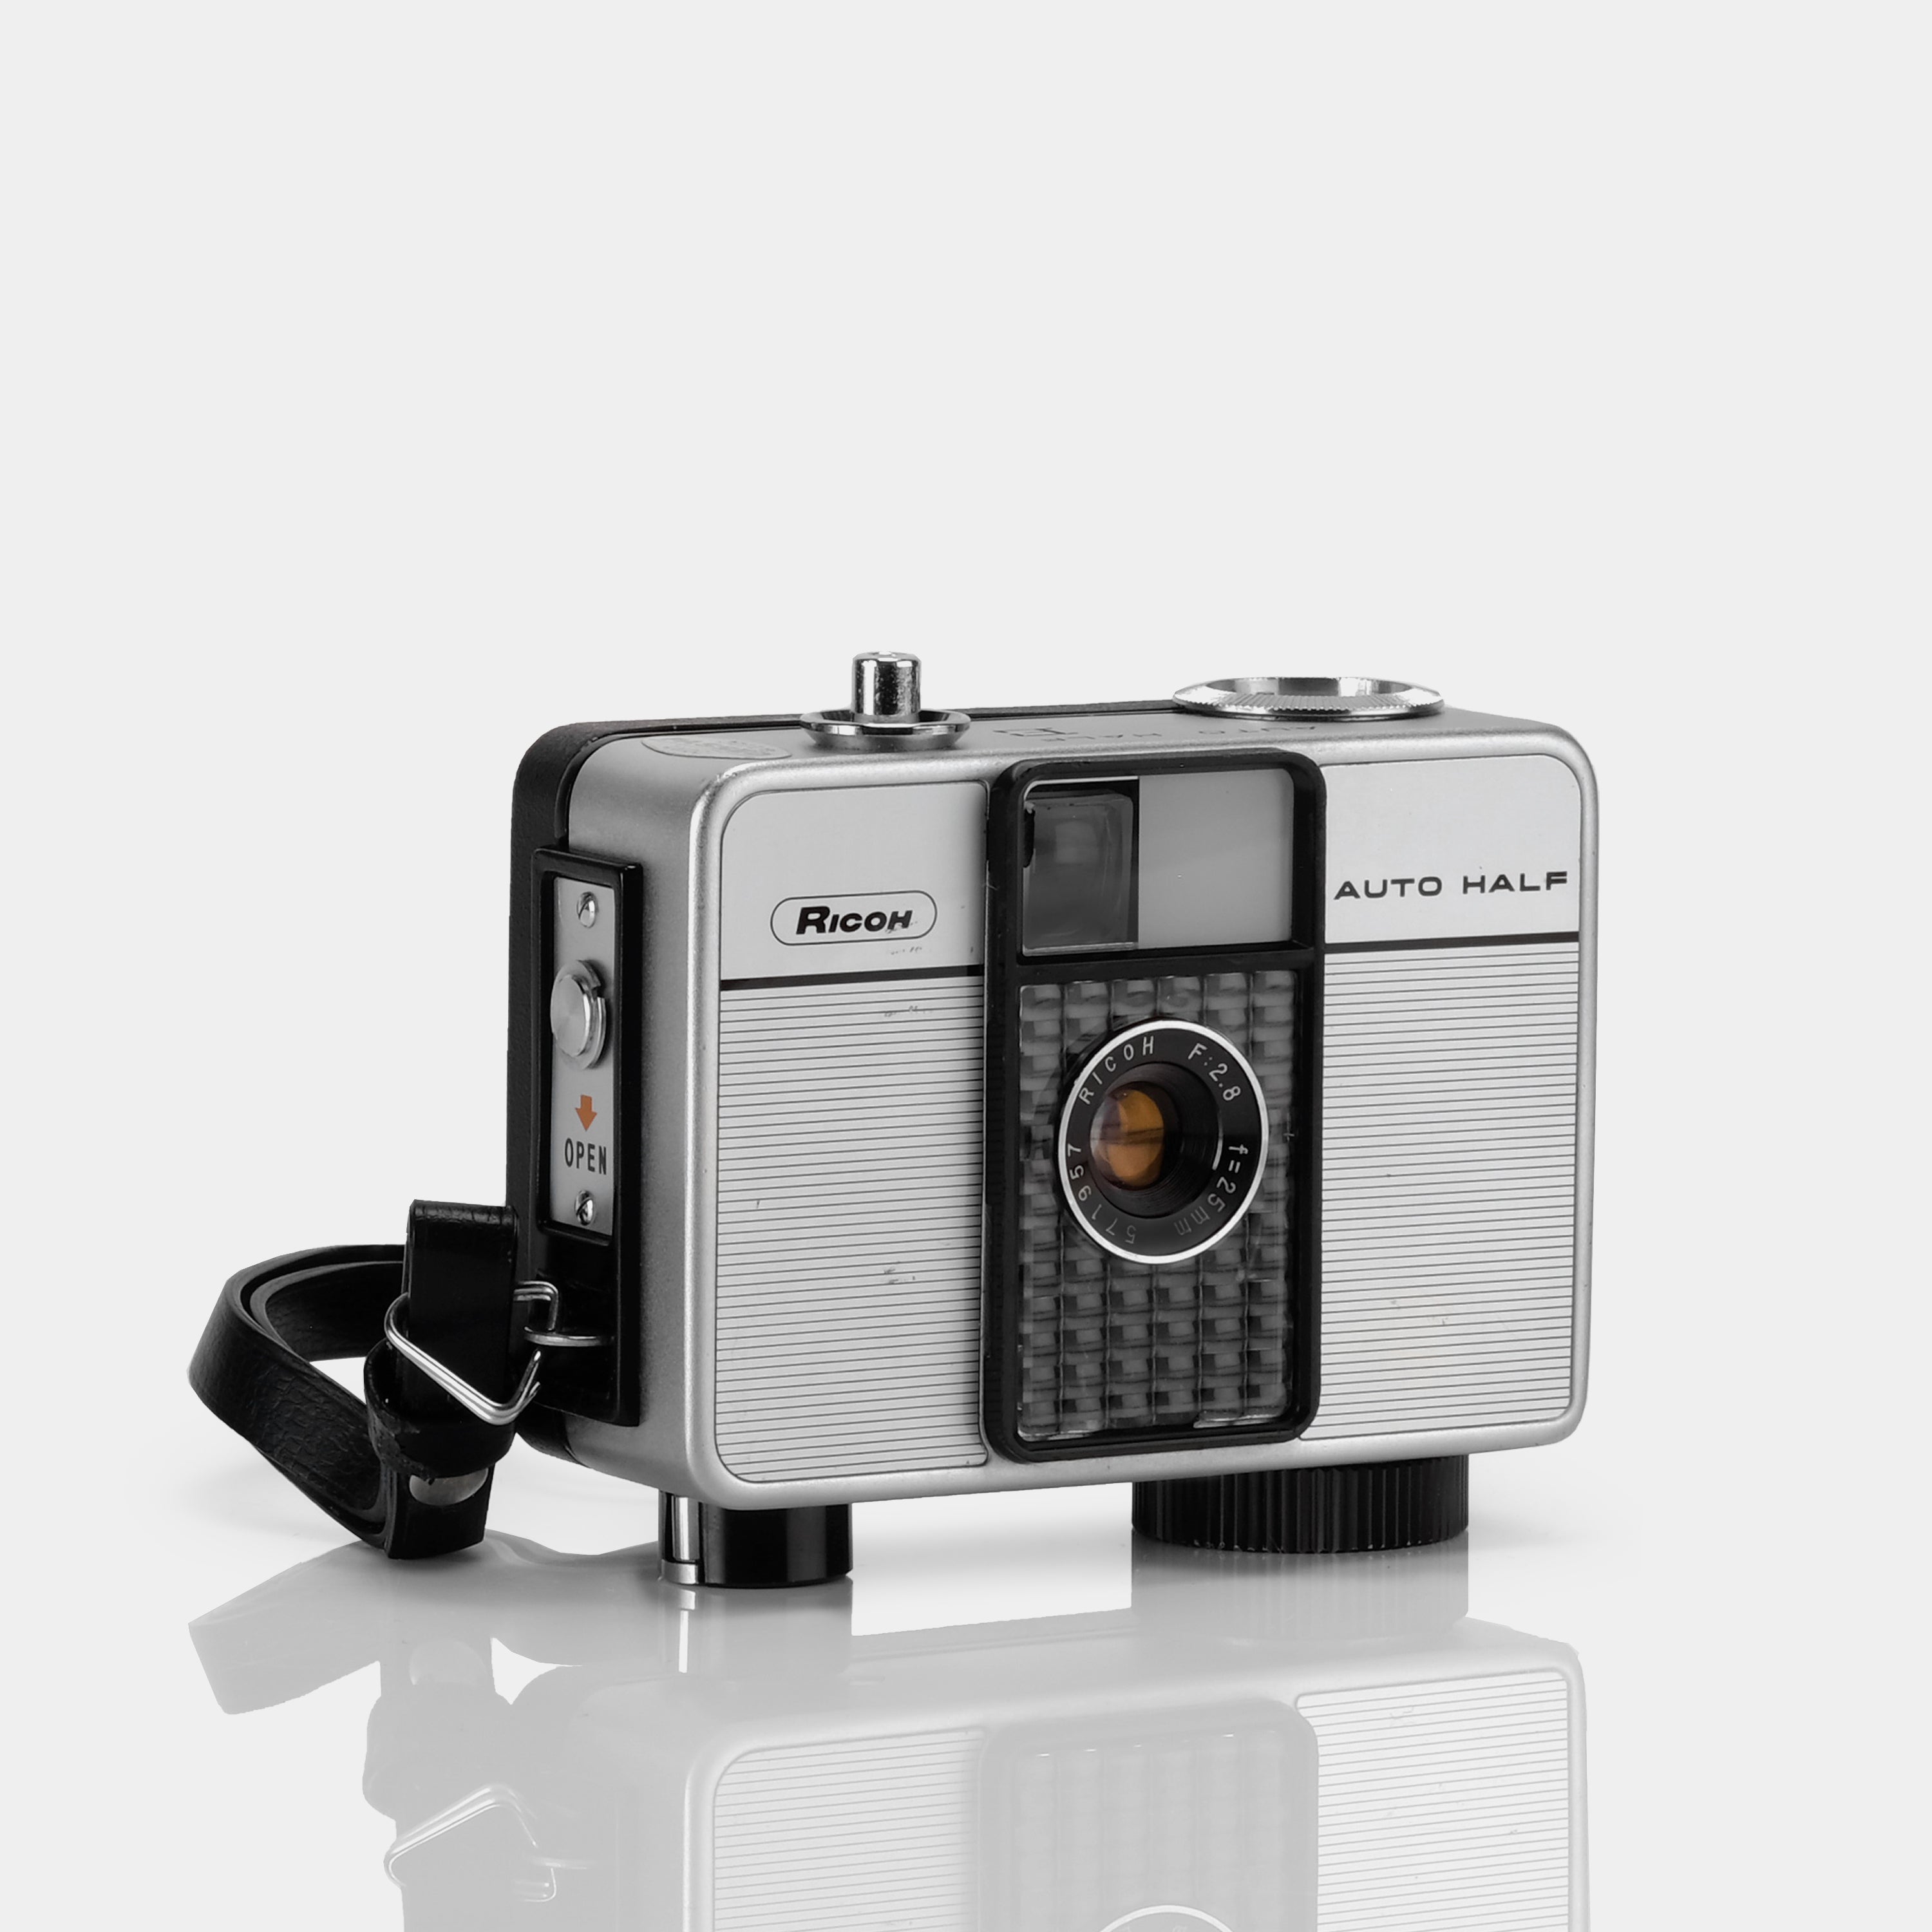 Ricoh Auto Half E Half Frame 35mm Film Camera